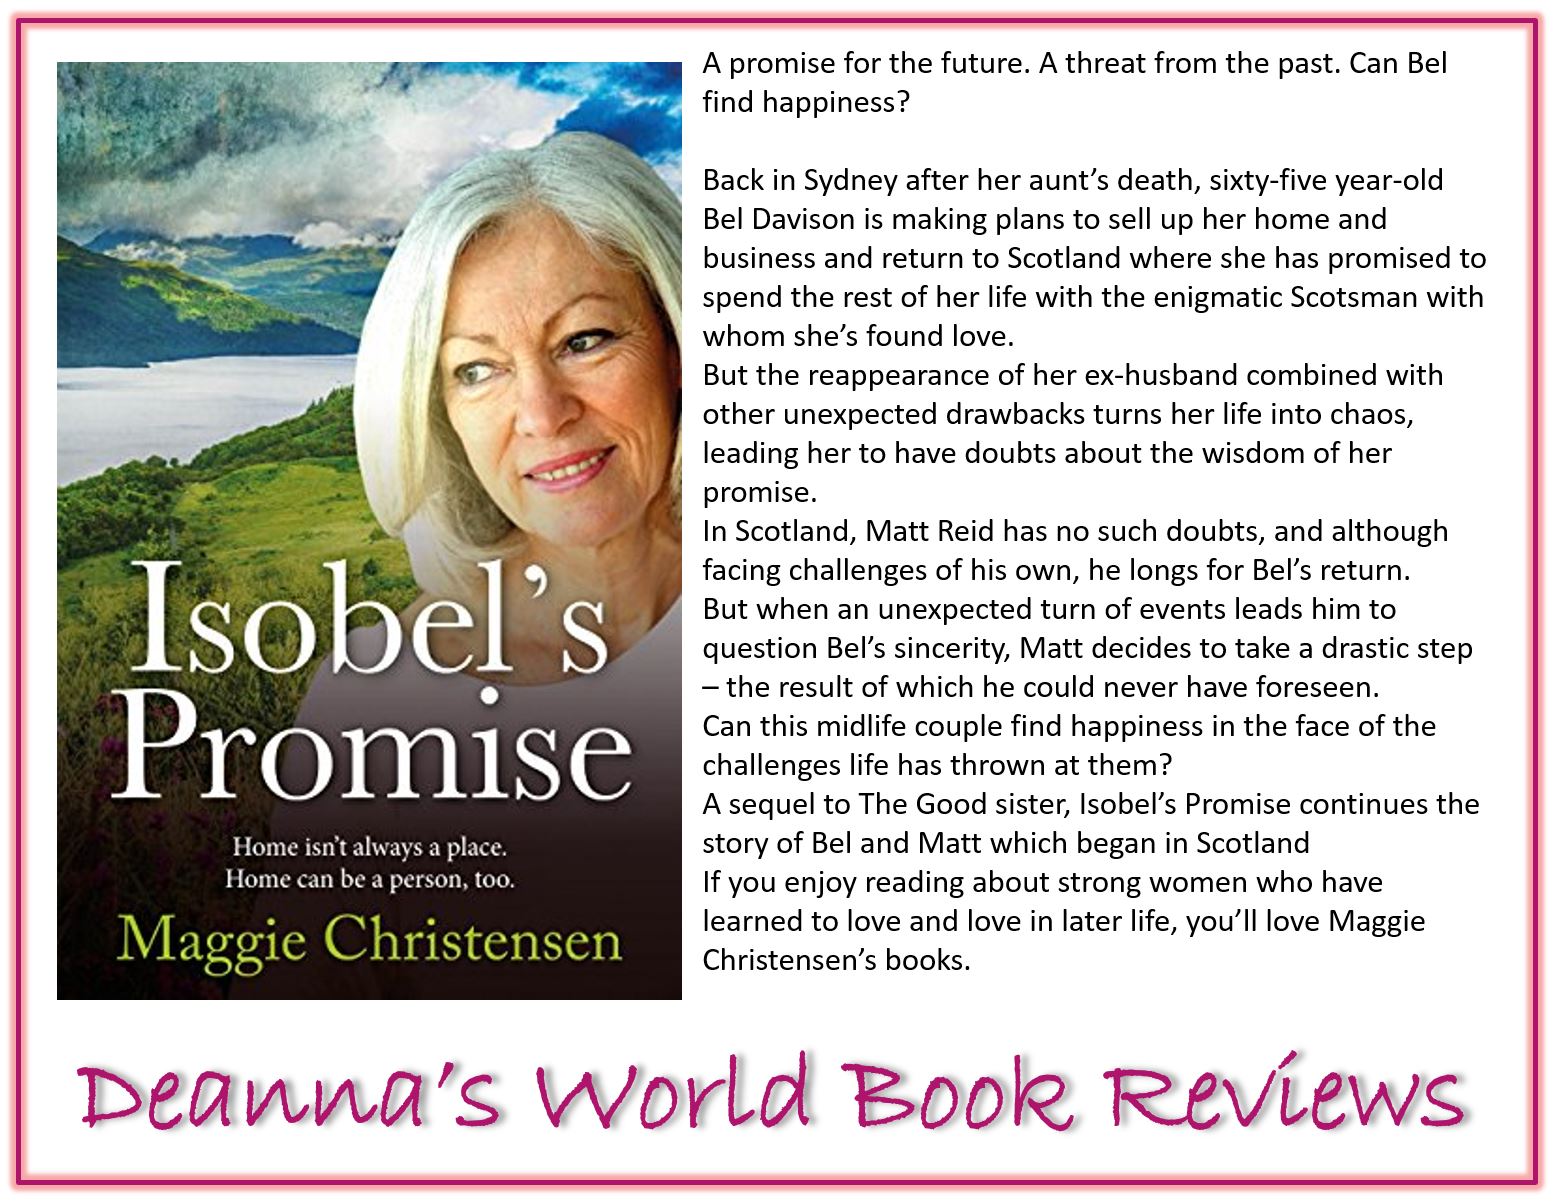 Isobel's Promise by Maggie Christensen